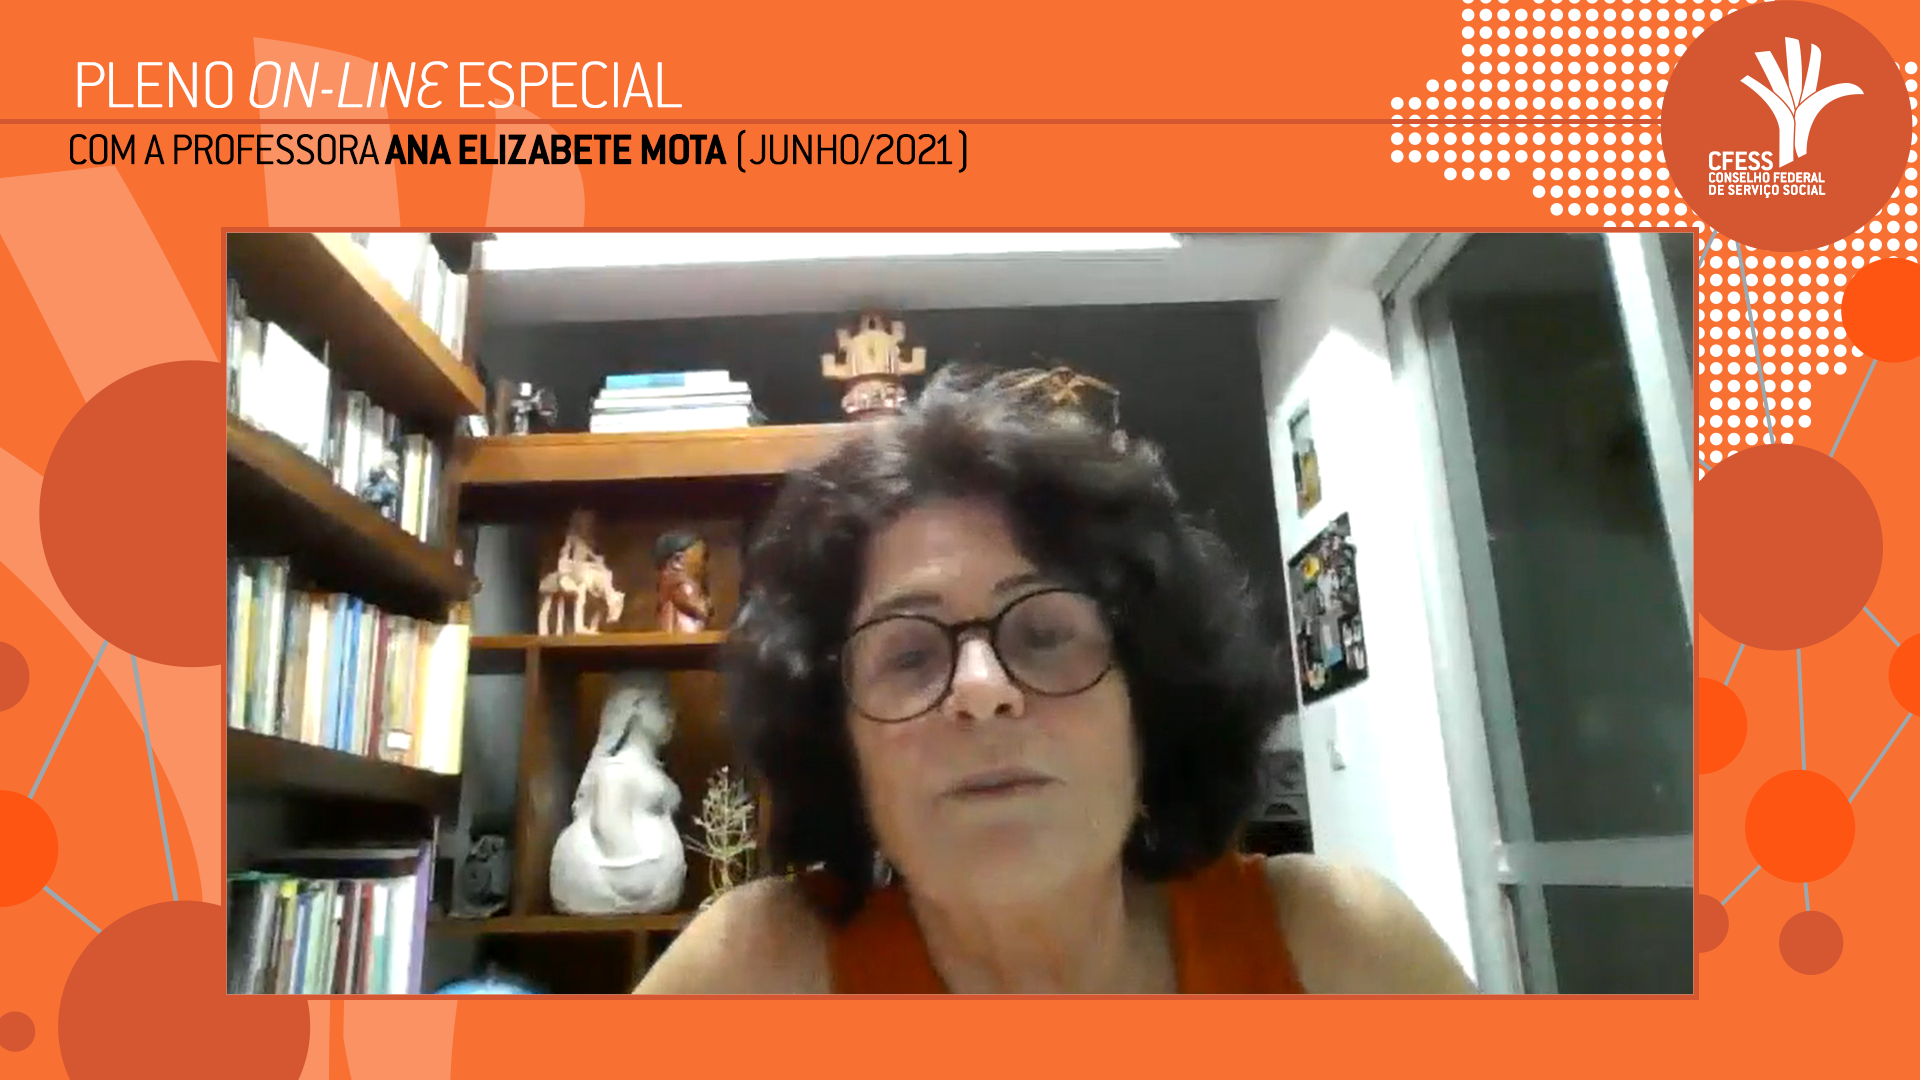 Imagem da professora Ana Elizabete Mota, durante debate com a gestão do CFESS, por meio virtual, mostrada em um quadro, com fundo colorido laranja.